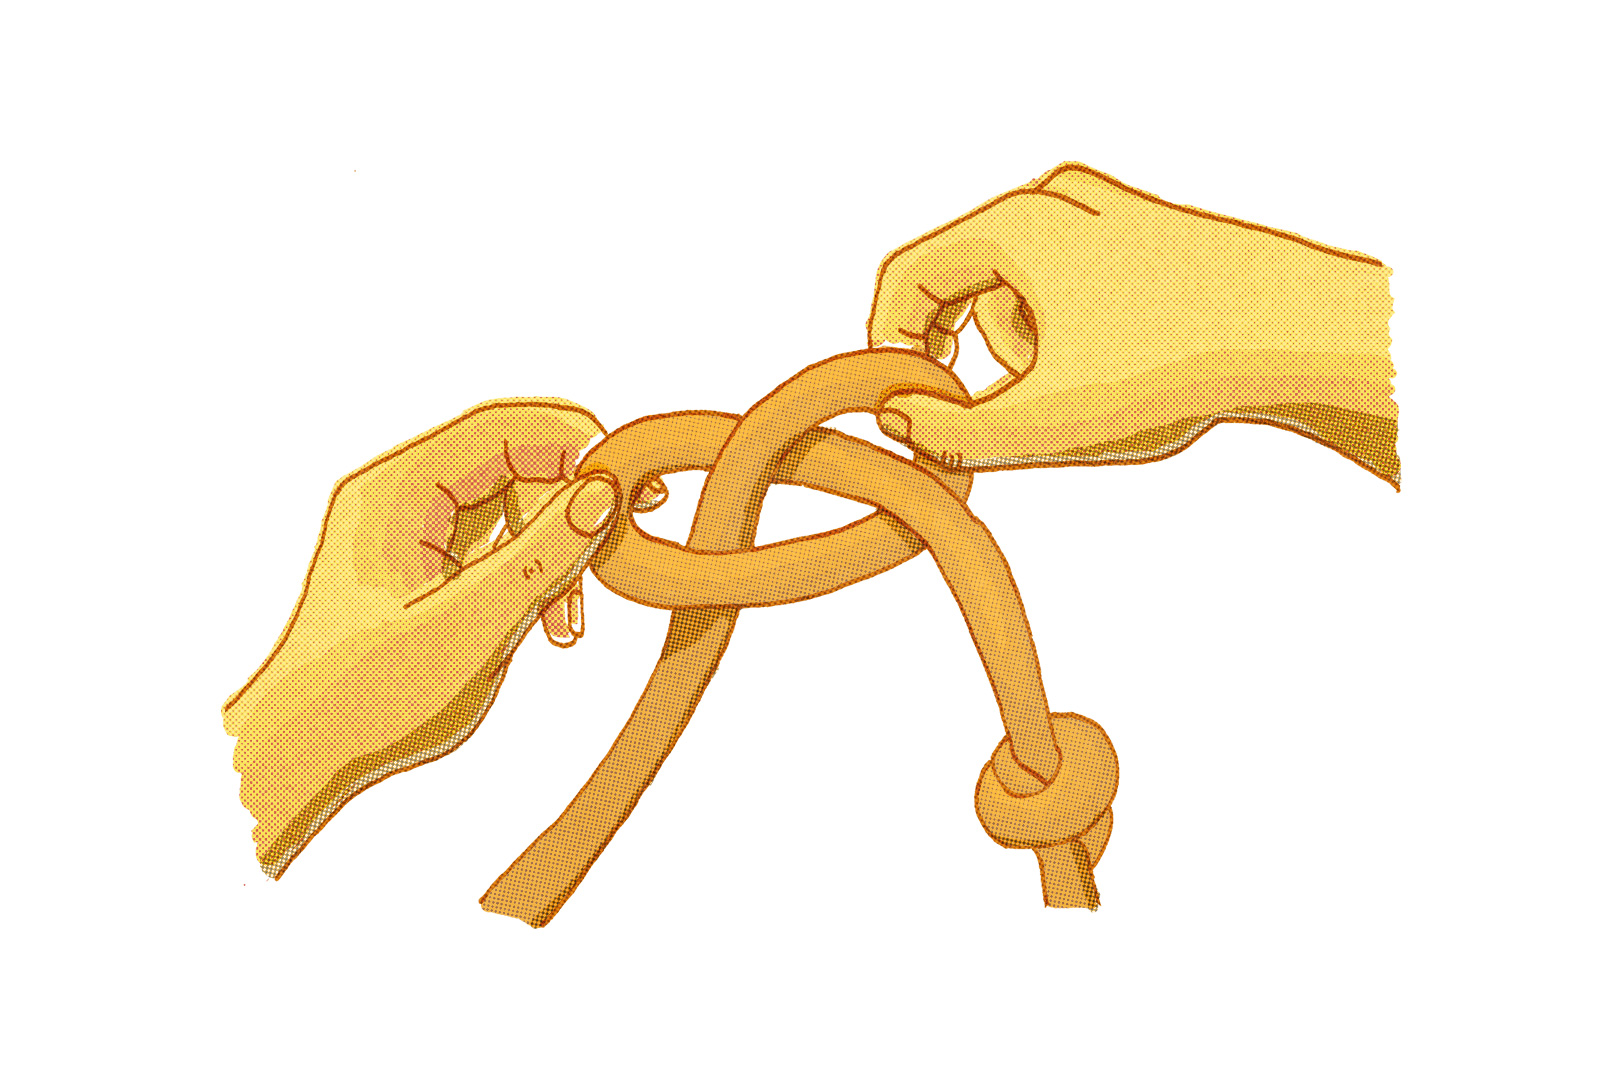 Bir halatla düğüm çözen iki el çizimi. Halat ilmeklenmiş ve ortada çaprazlanmış, uçları eller tarafından çekiliyor. İpin bir ucunda basit bir el üstü düğümü vardır. Eller bağlama işlemini tamamlamak üzere konumlandırılmıştır.